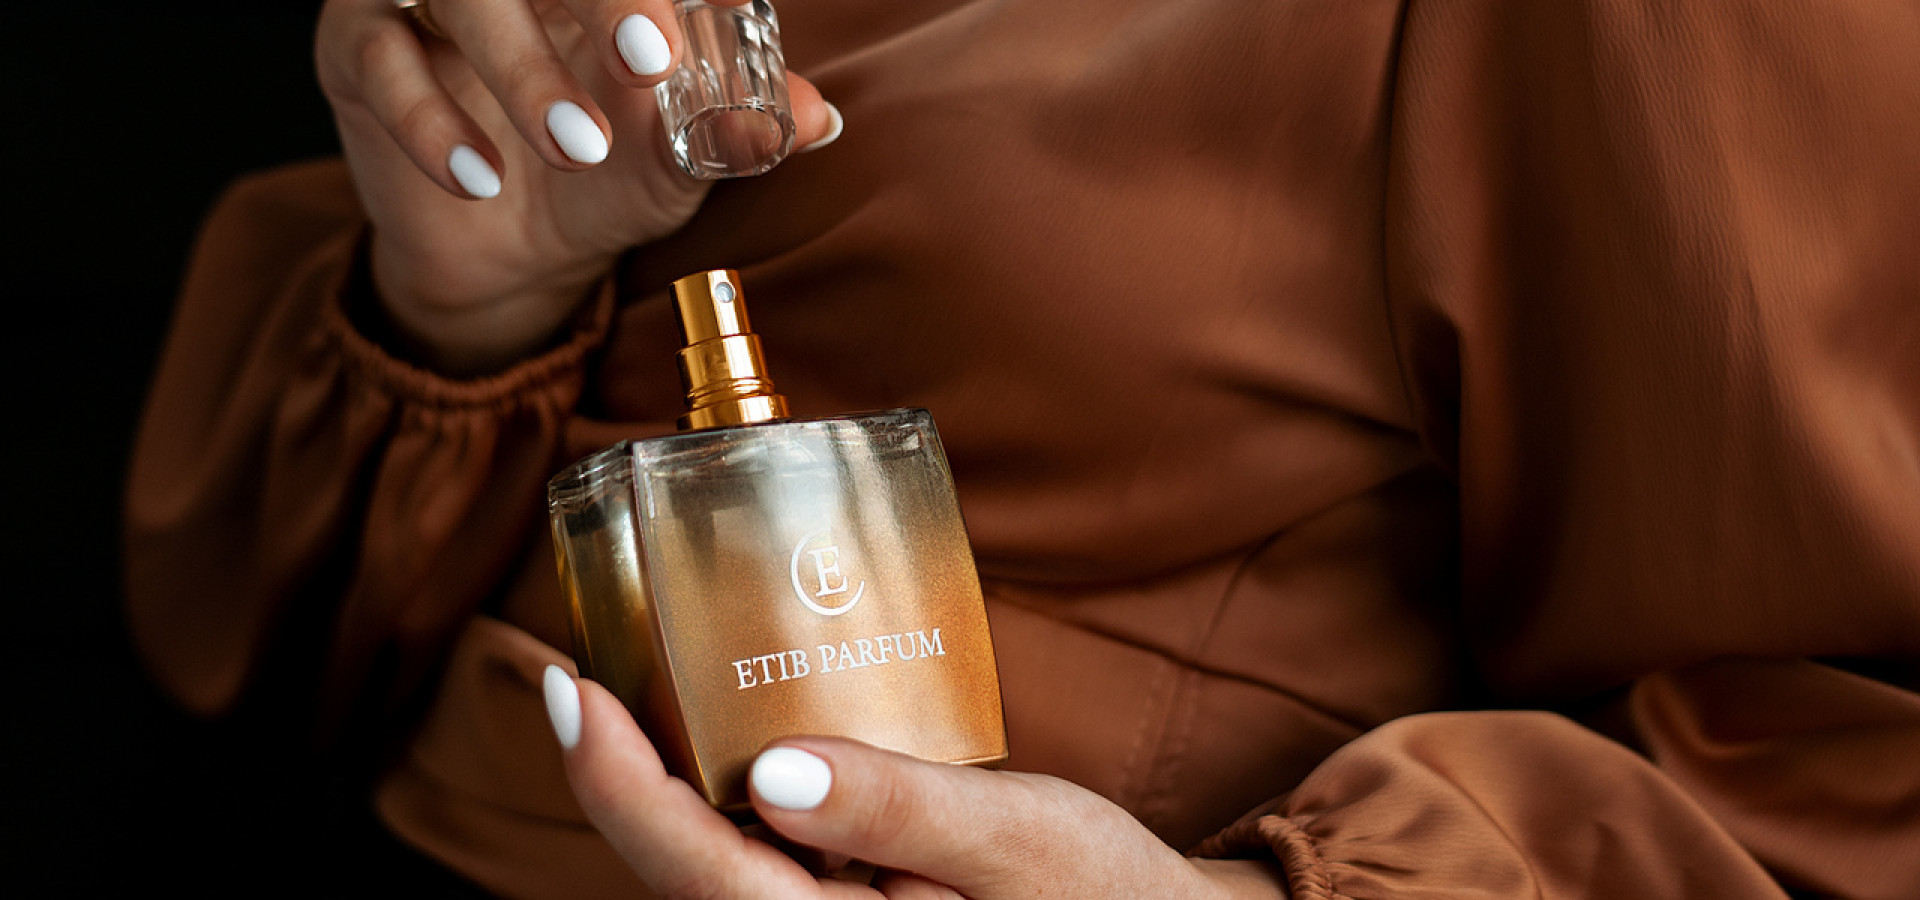 Парфюм ETIB Parfum — cамая крупная сеть парфюмерных магазинов в Беларуси